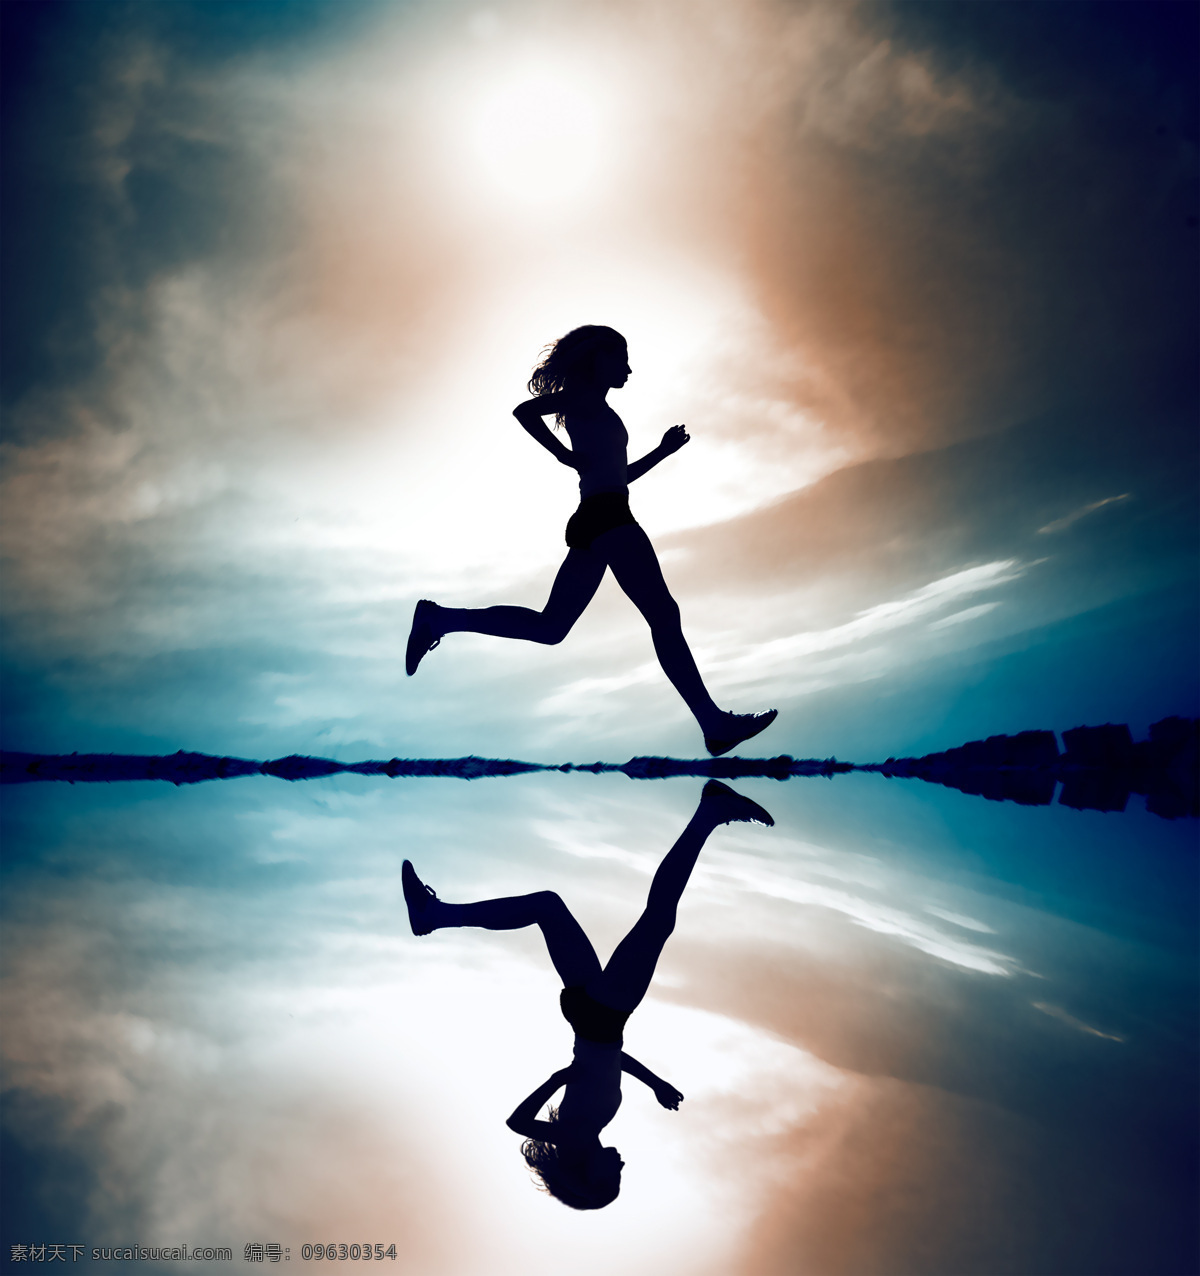 晨跑 人体 跑步 运动 体育 湖 倒影 天空 蓝天 女人 女性 人物图库 人物摄影 摄影图库